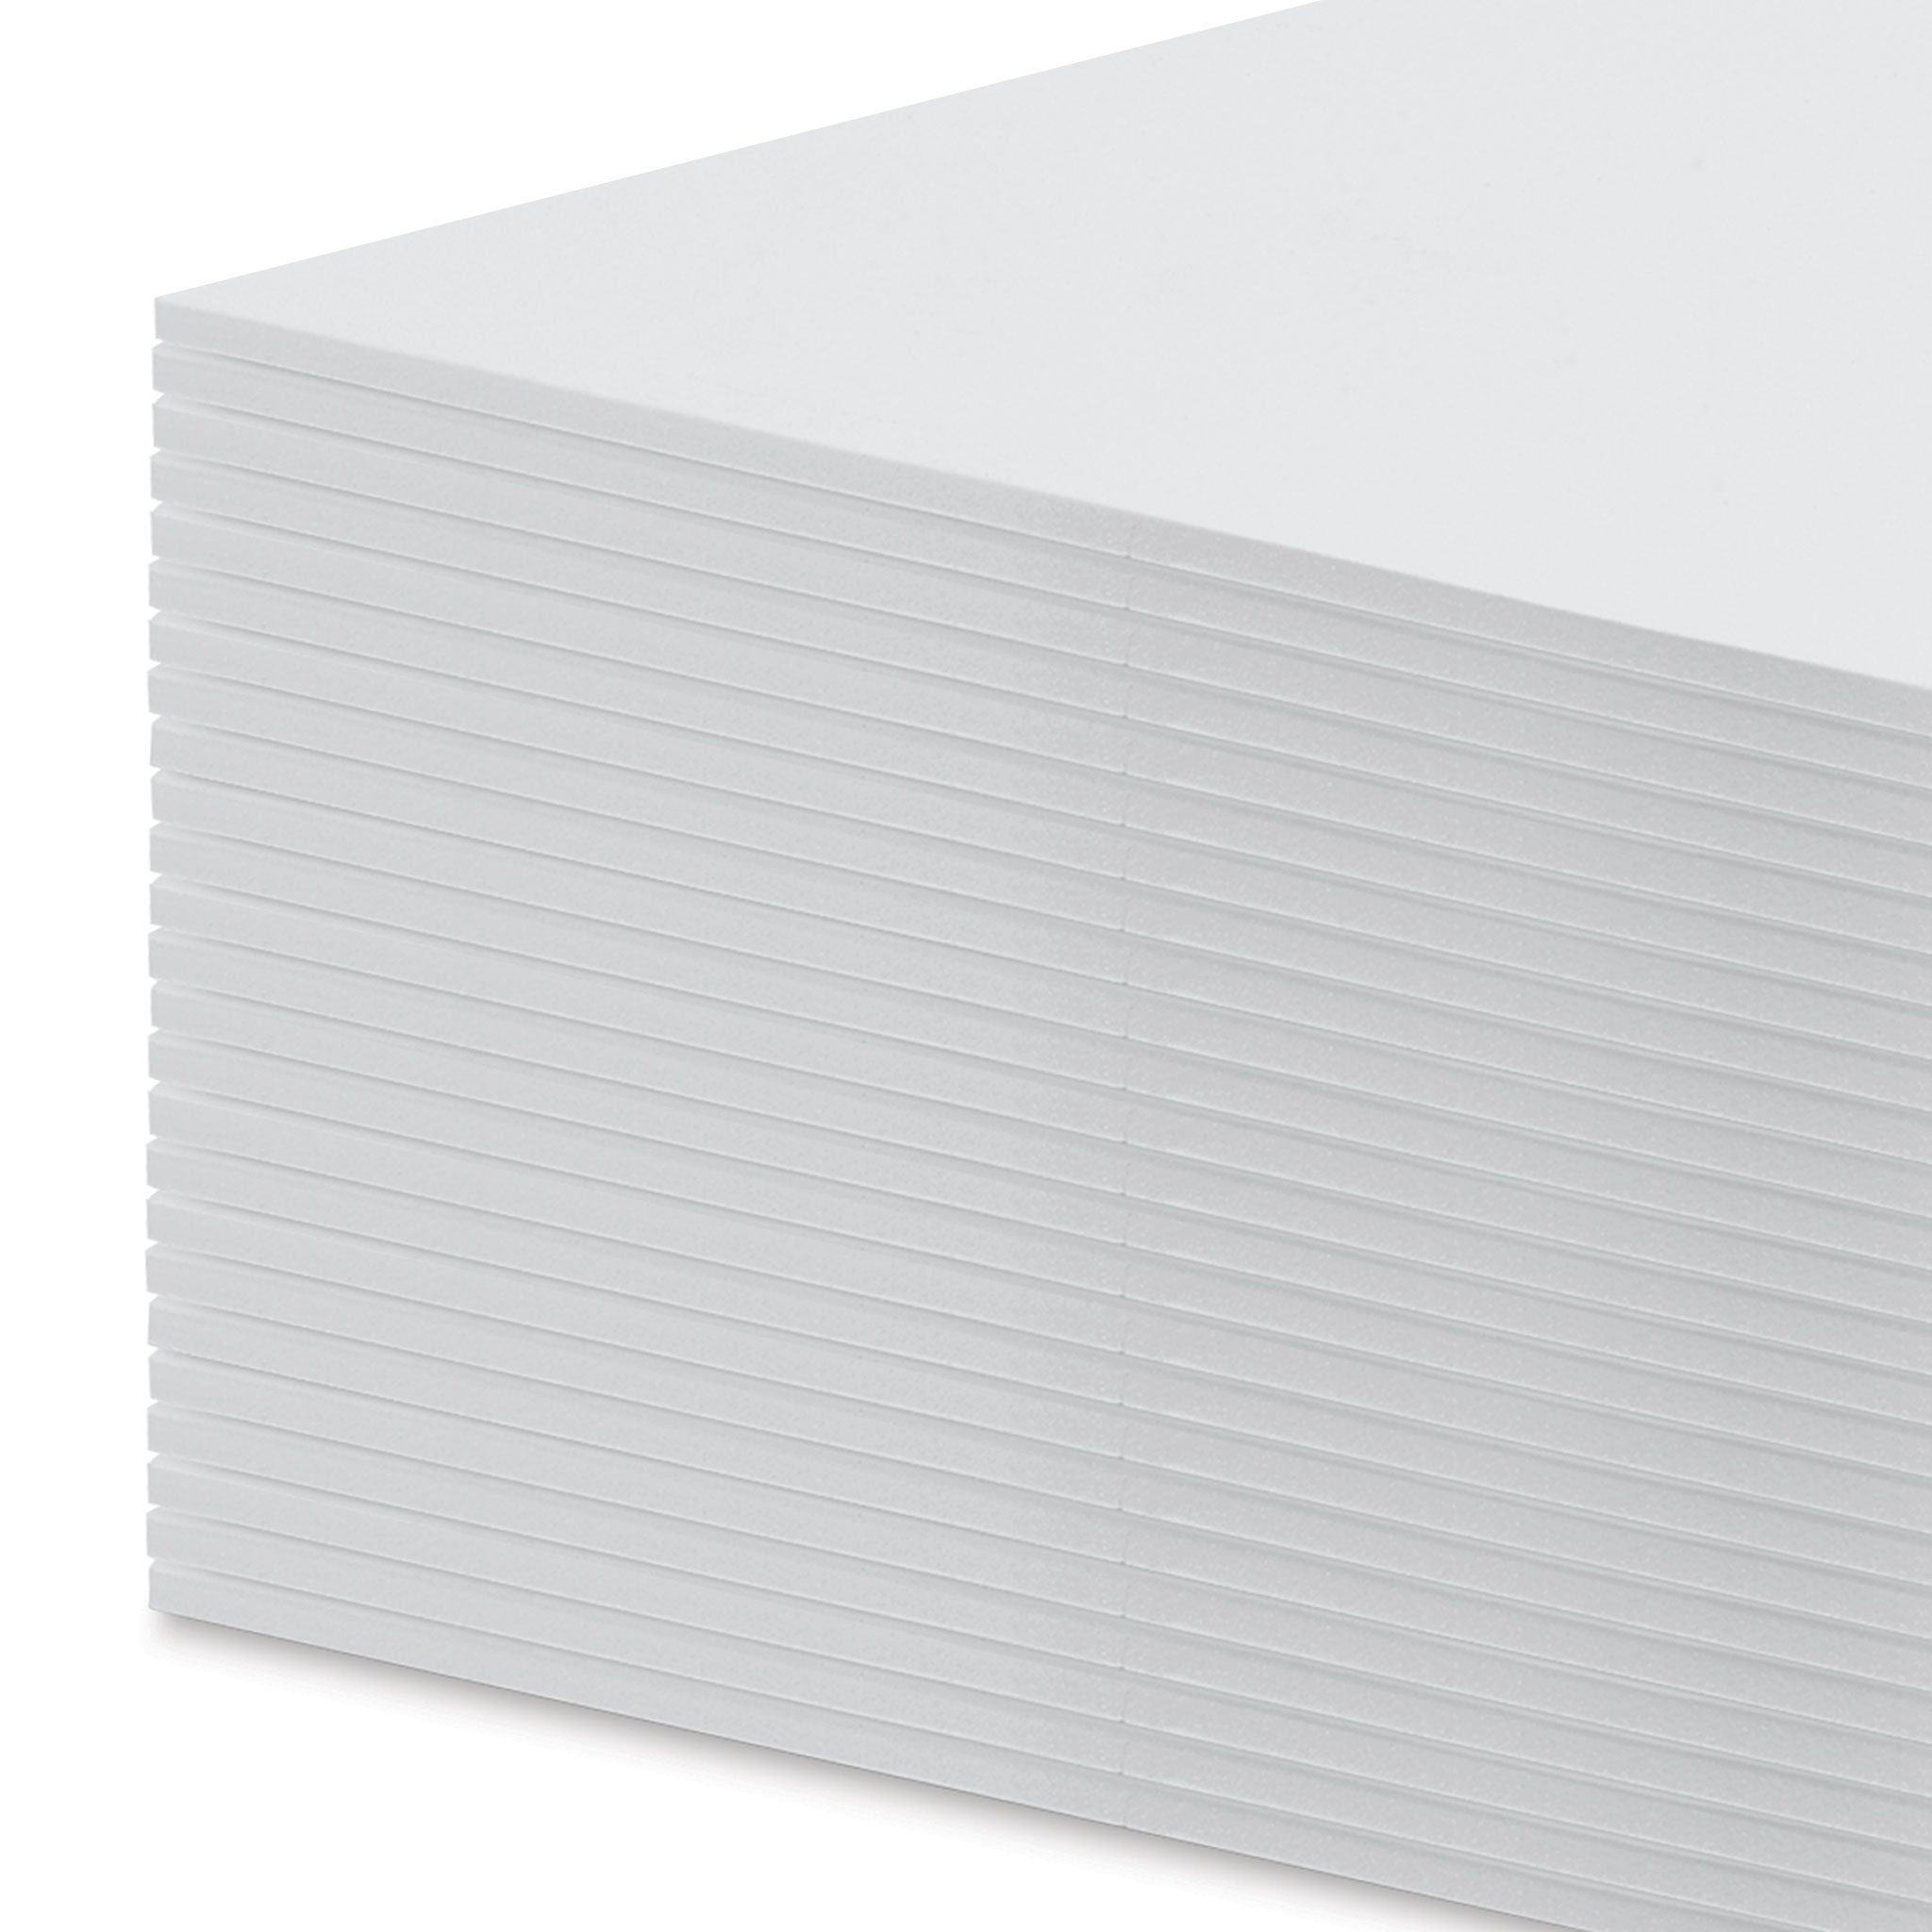 Elmer's Foamboard Pack - 20 x 30 x 1/2, White, Pkg of 10